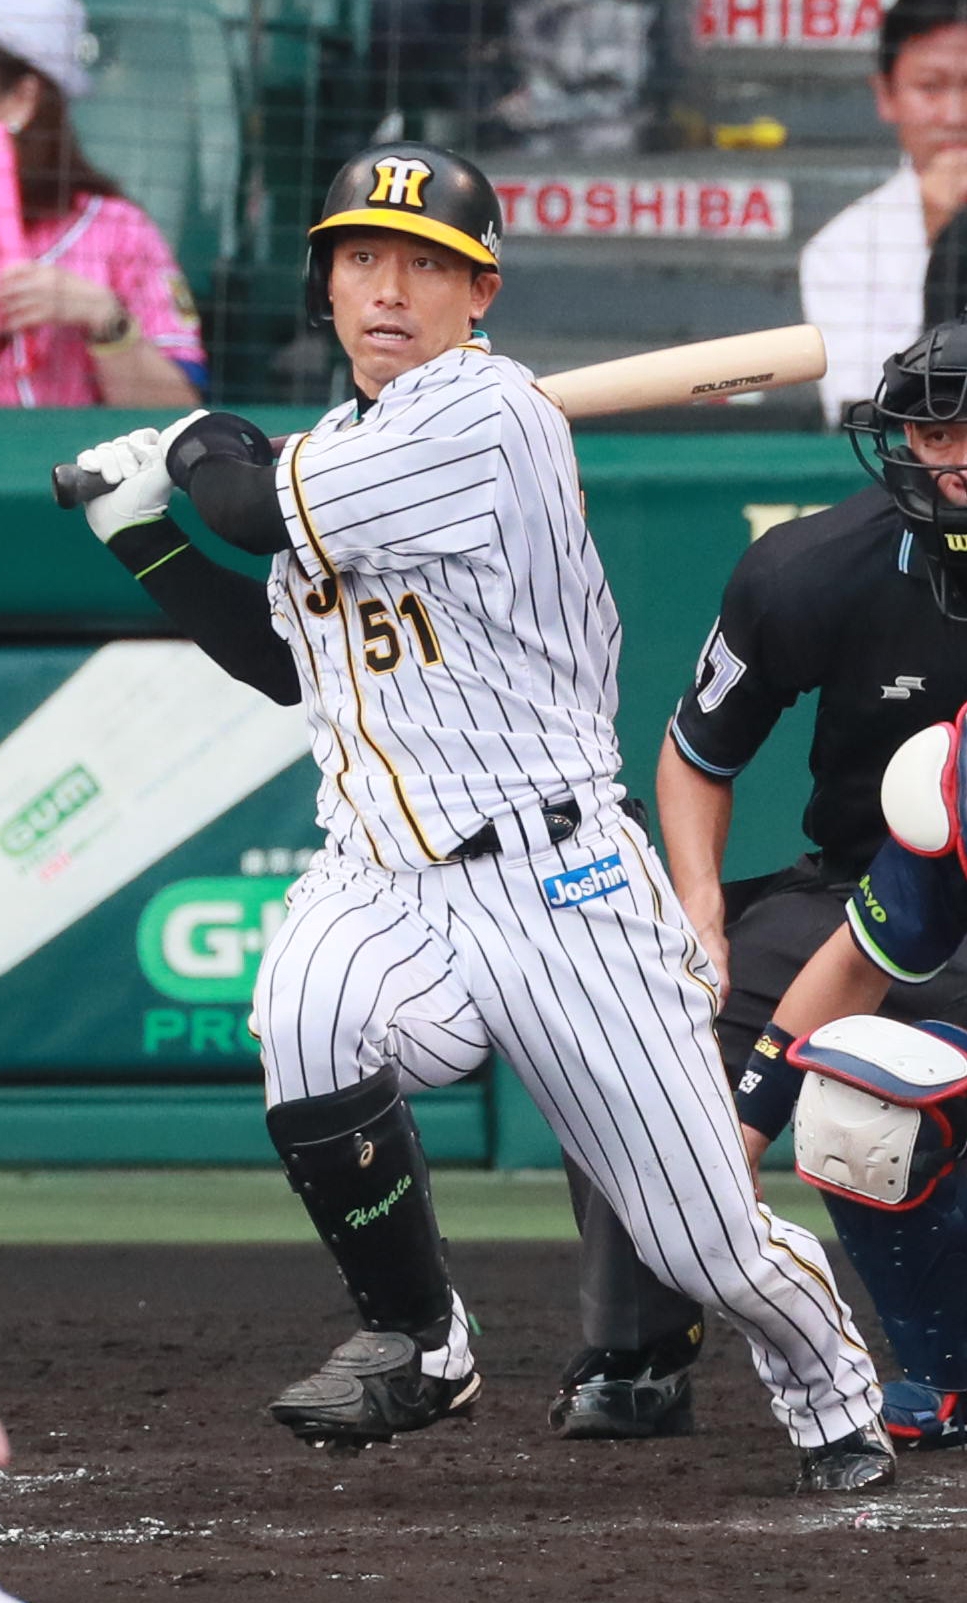 こちらは野球です阪神タイガース伊藤隼太選手のバッティンググローブ実使用